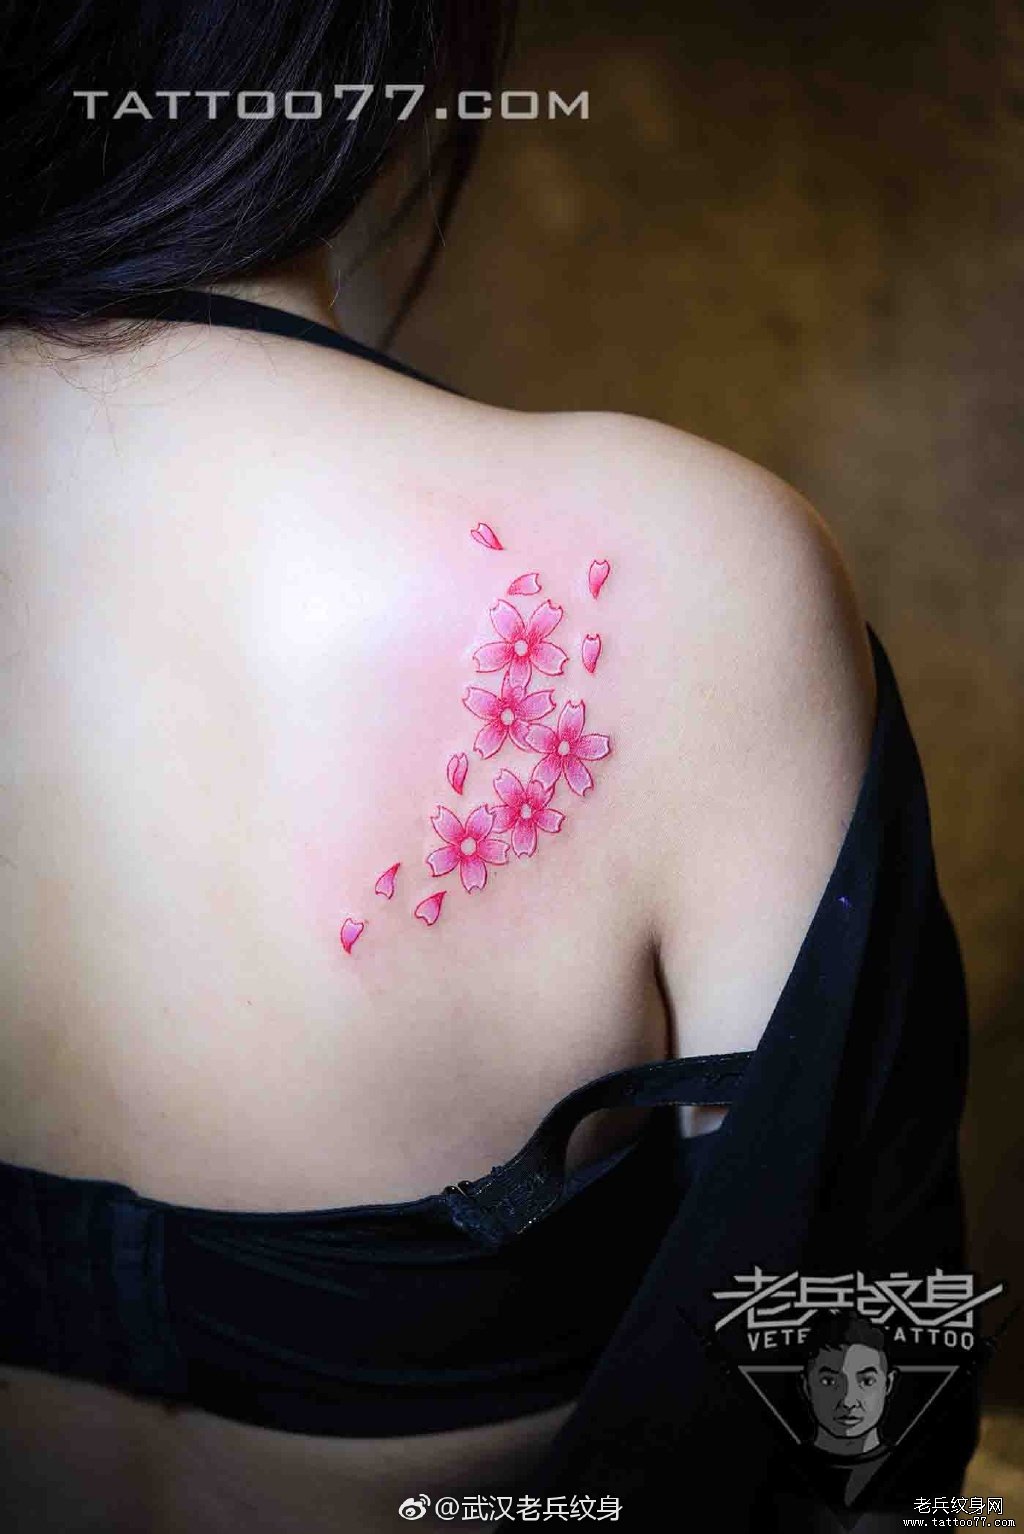 彩色樱花刺青纹身作品         手臂彩色花朵刺青纹身图案